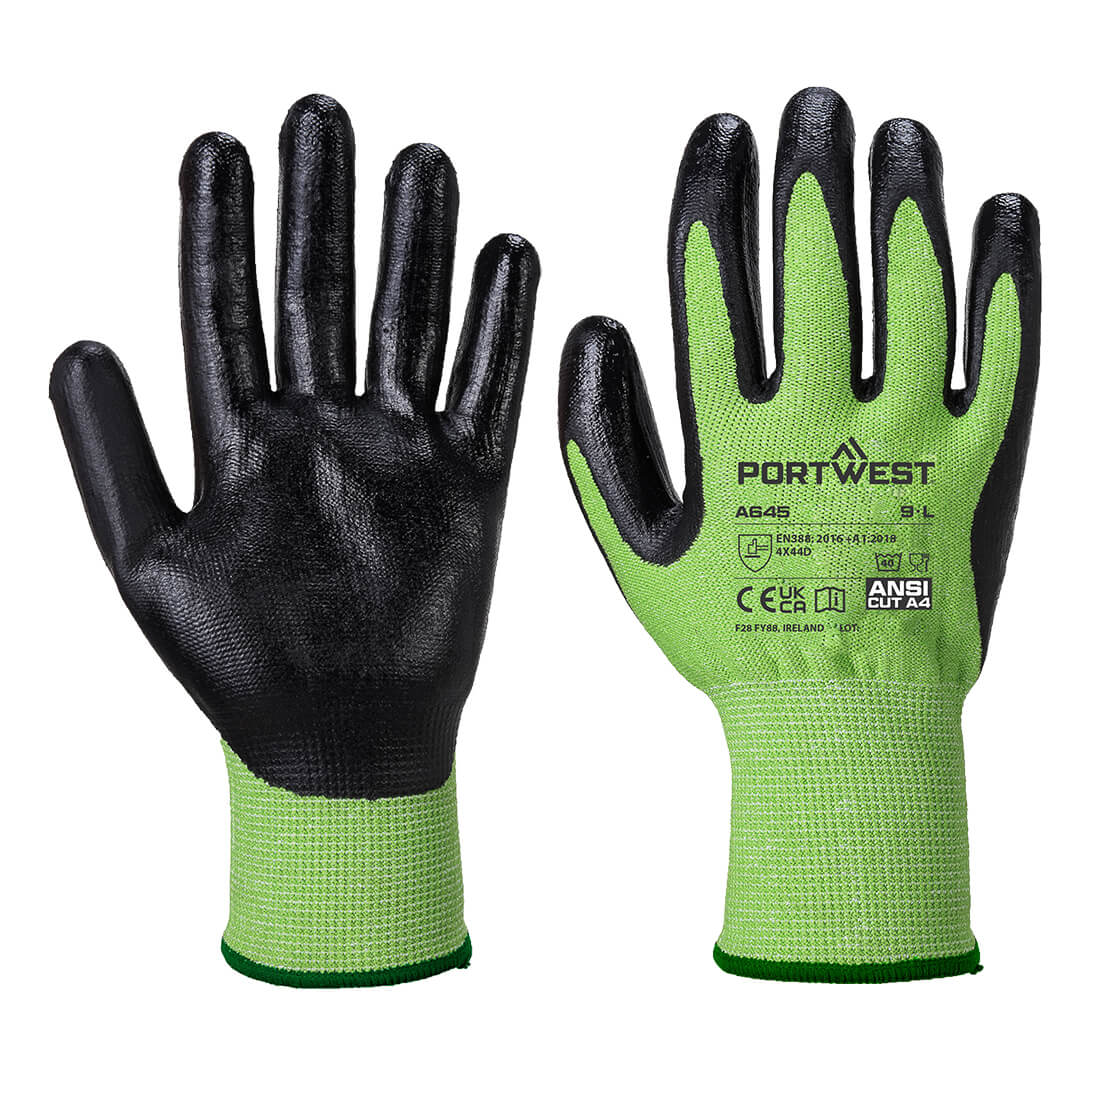 Green Cut Glove - Nitrile Foam  (A645)